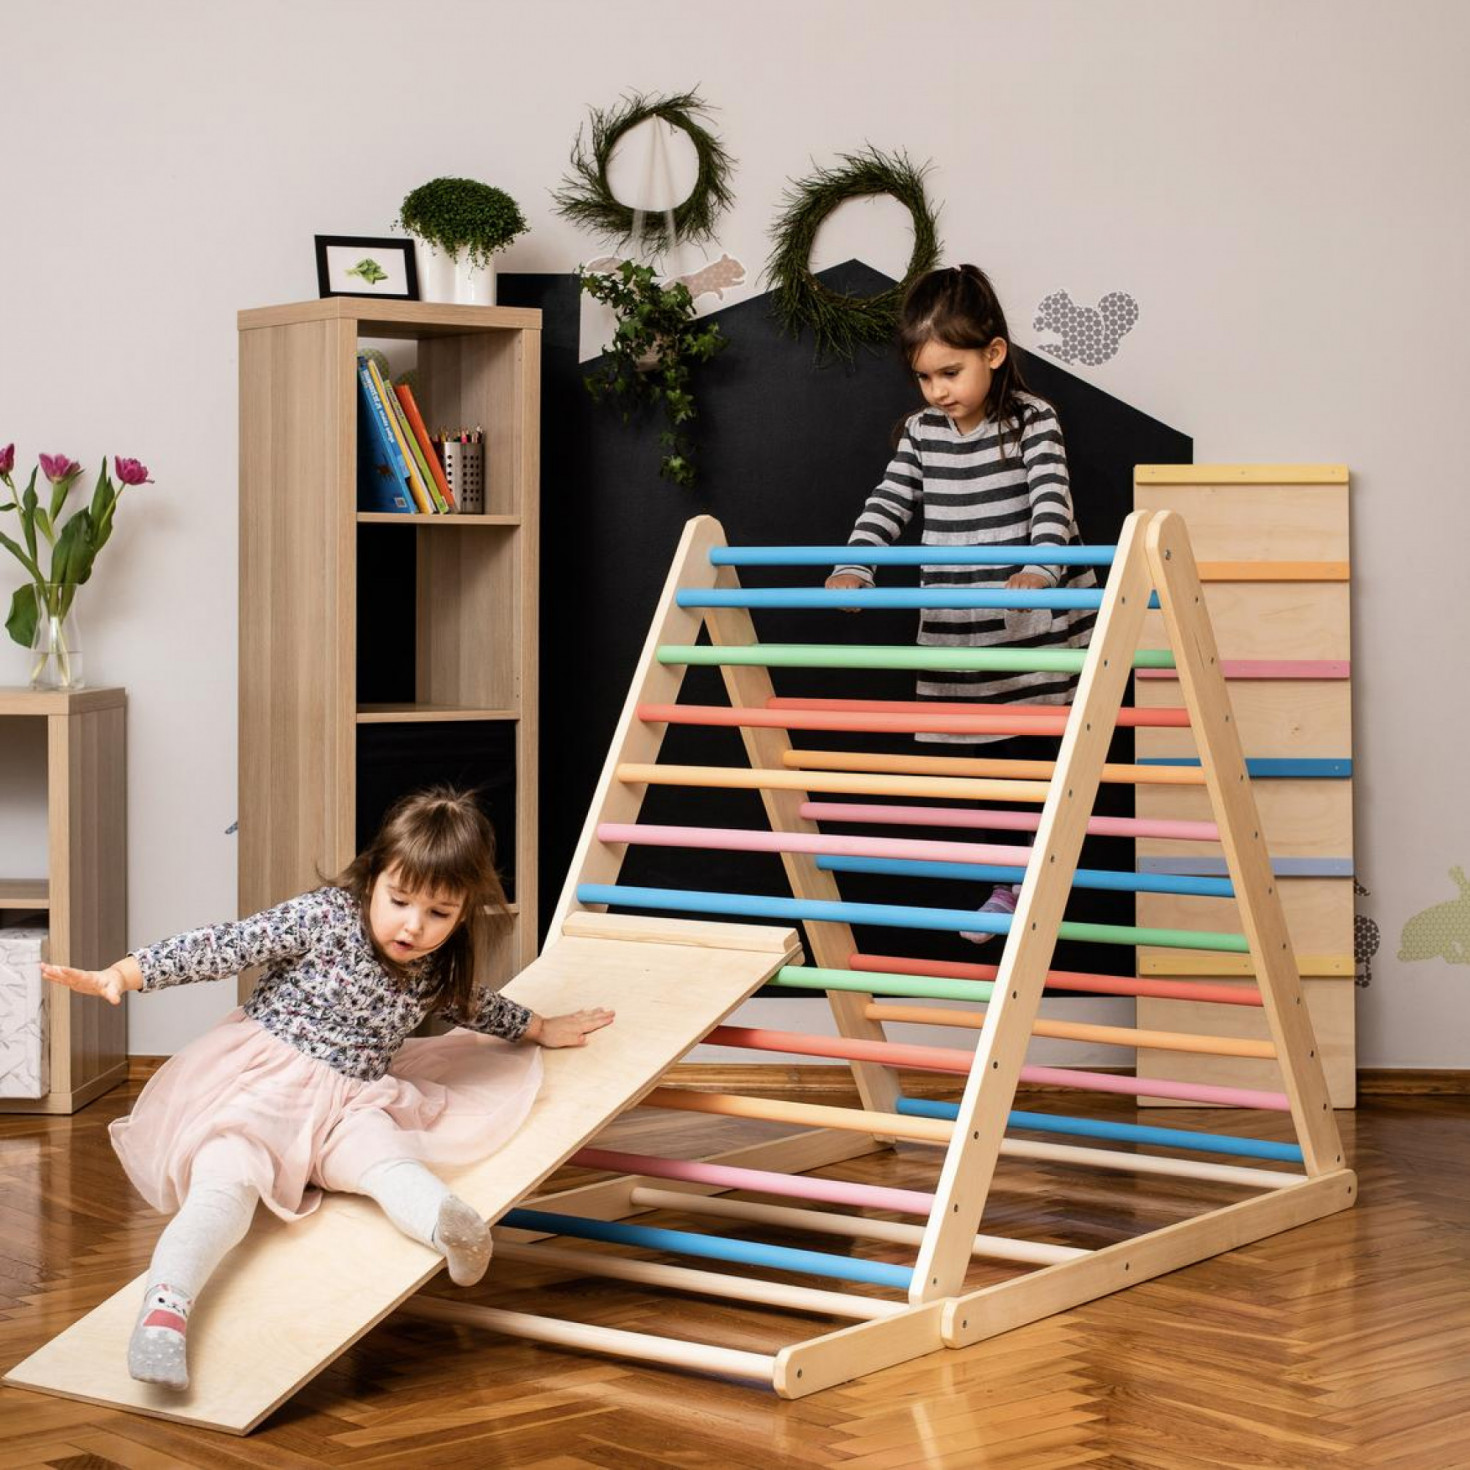 Ngắm phòng riêng của con gái Cường Đô la: Loạt đồ chơi đắt đỏ kết hợp phương pháp giáo dục Montessori - Ảnh 6.